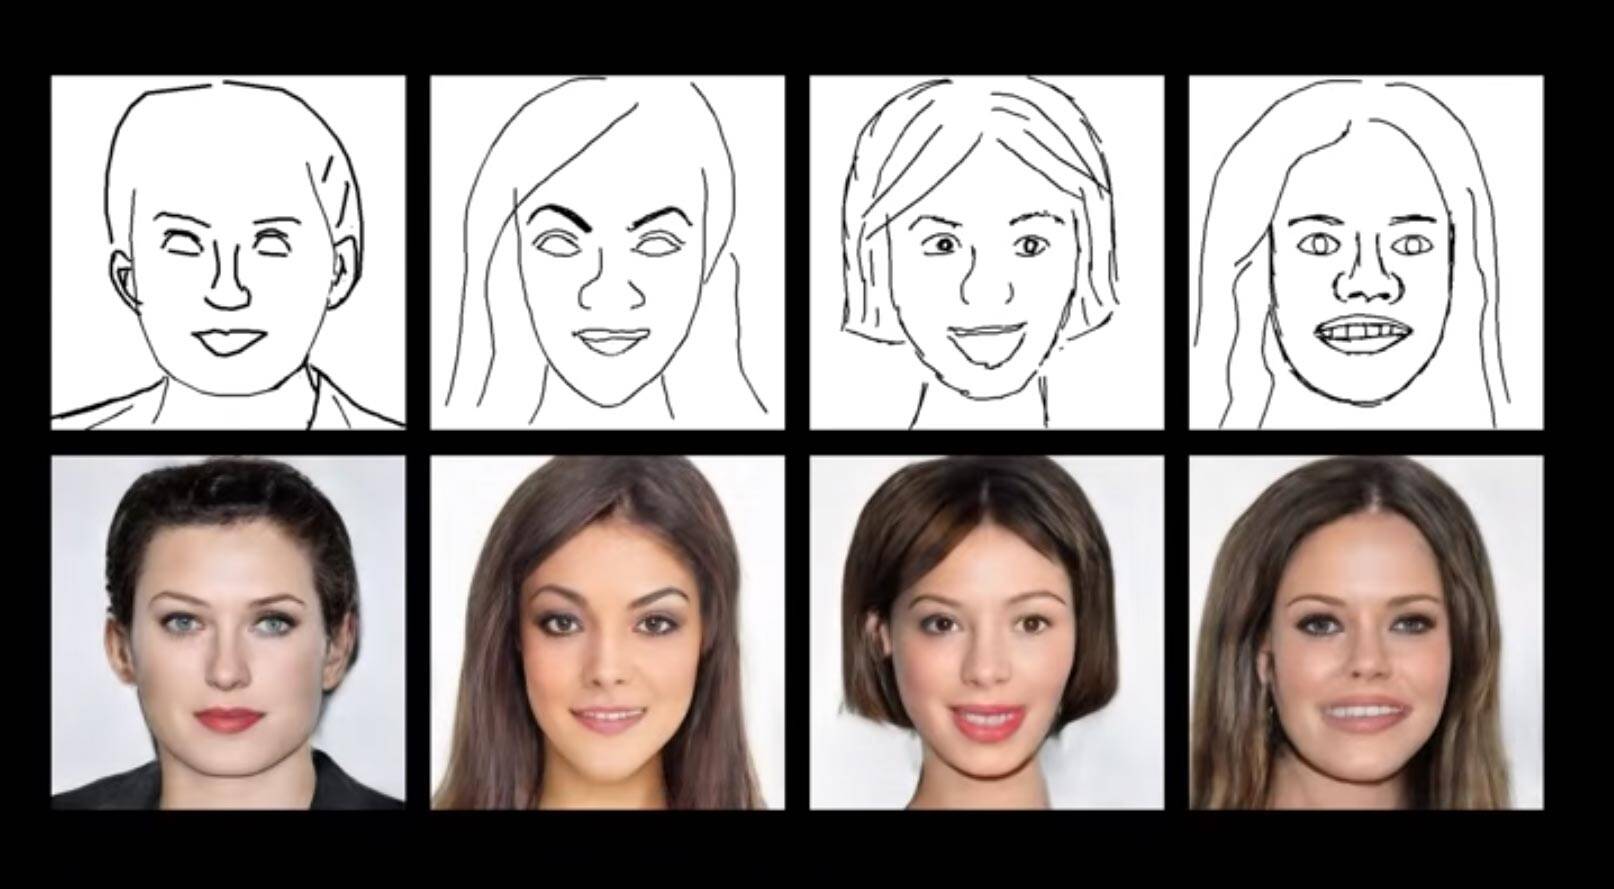 Investigadores criam rostos realistas a partir de simples rabiscos